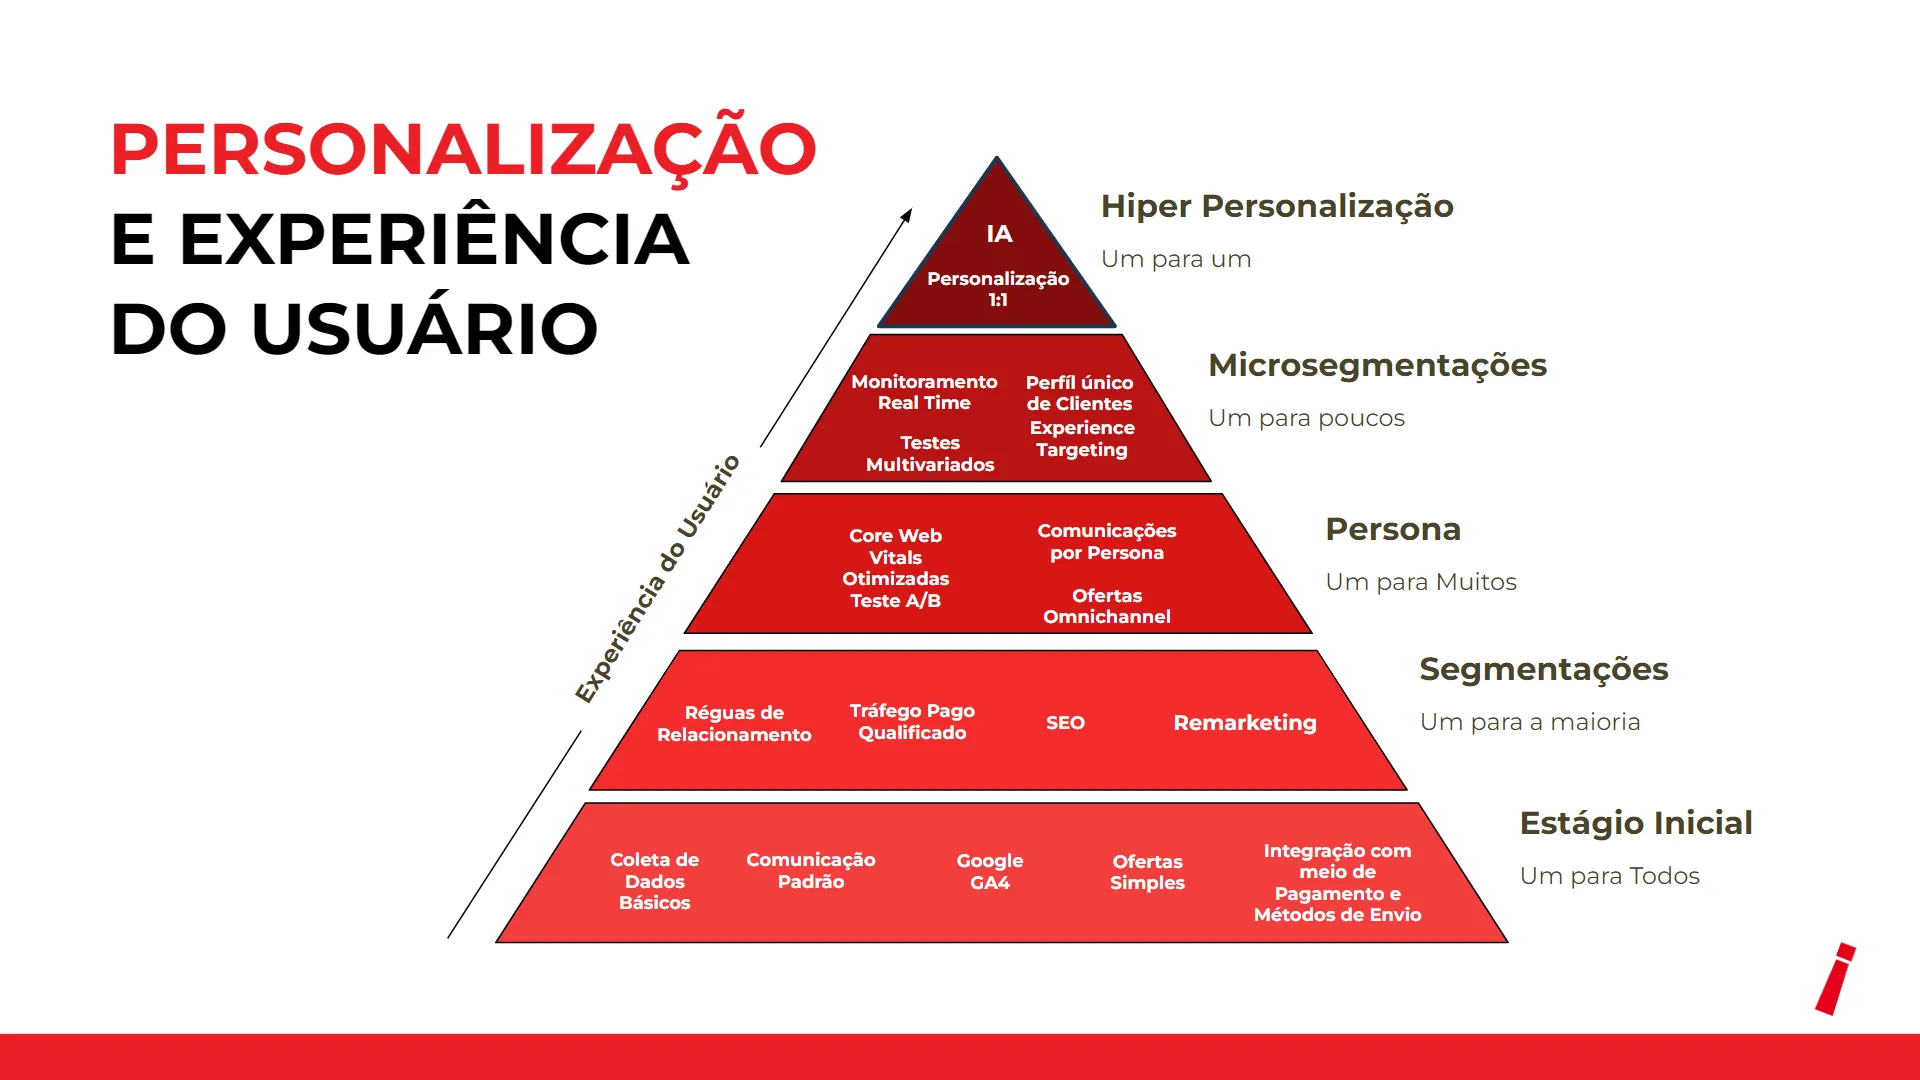 Pirâmide vermelha dividida entre os níveis de personalização da experiência do usuário